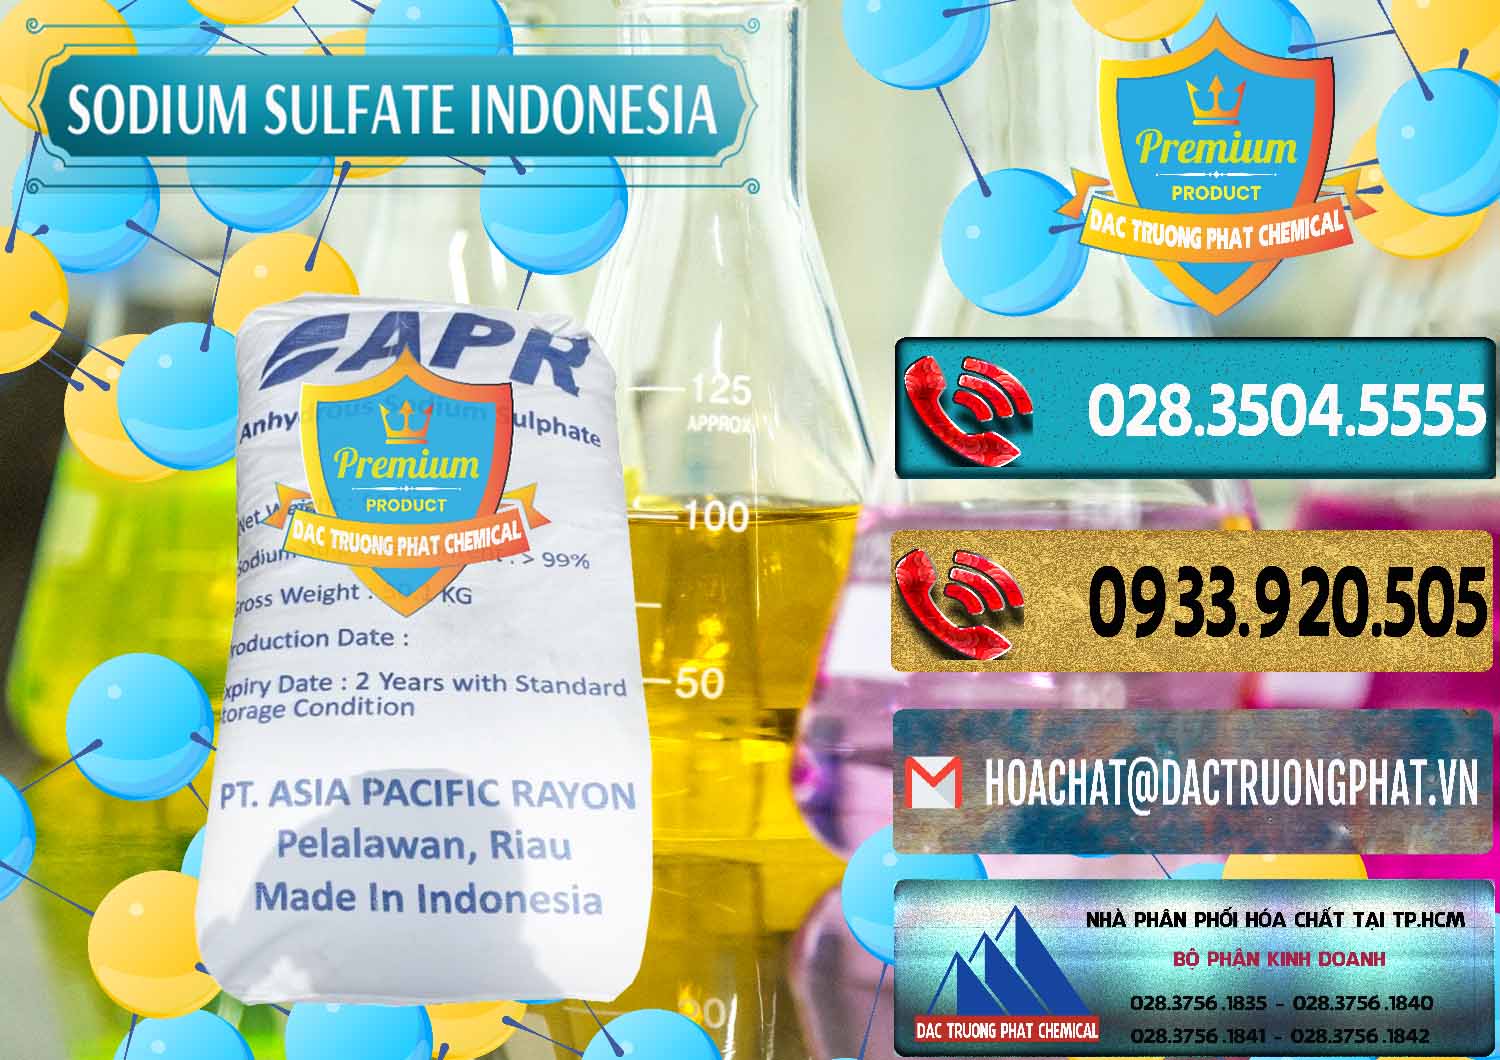 Chuyên cung cấp & bán Sodium Sulphate - Muối Sunfat Na2SO4 APR Indonesia - 0460 - Công ty bán & cung cấp hóa chất tại TP.HCM - hoachatdetnhuom.com